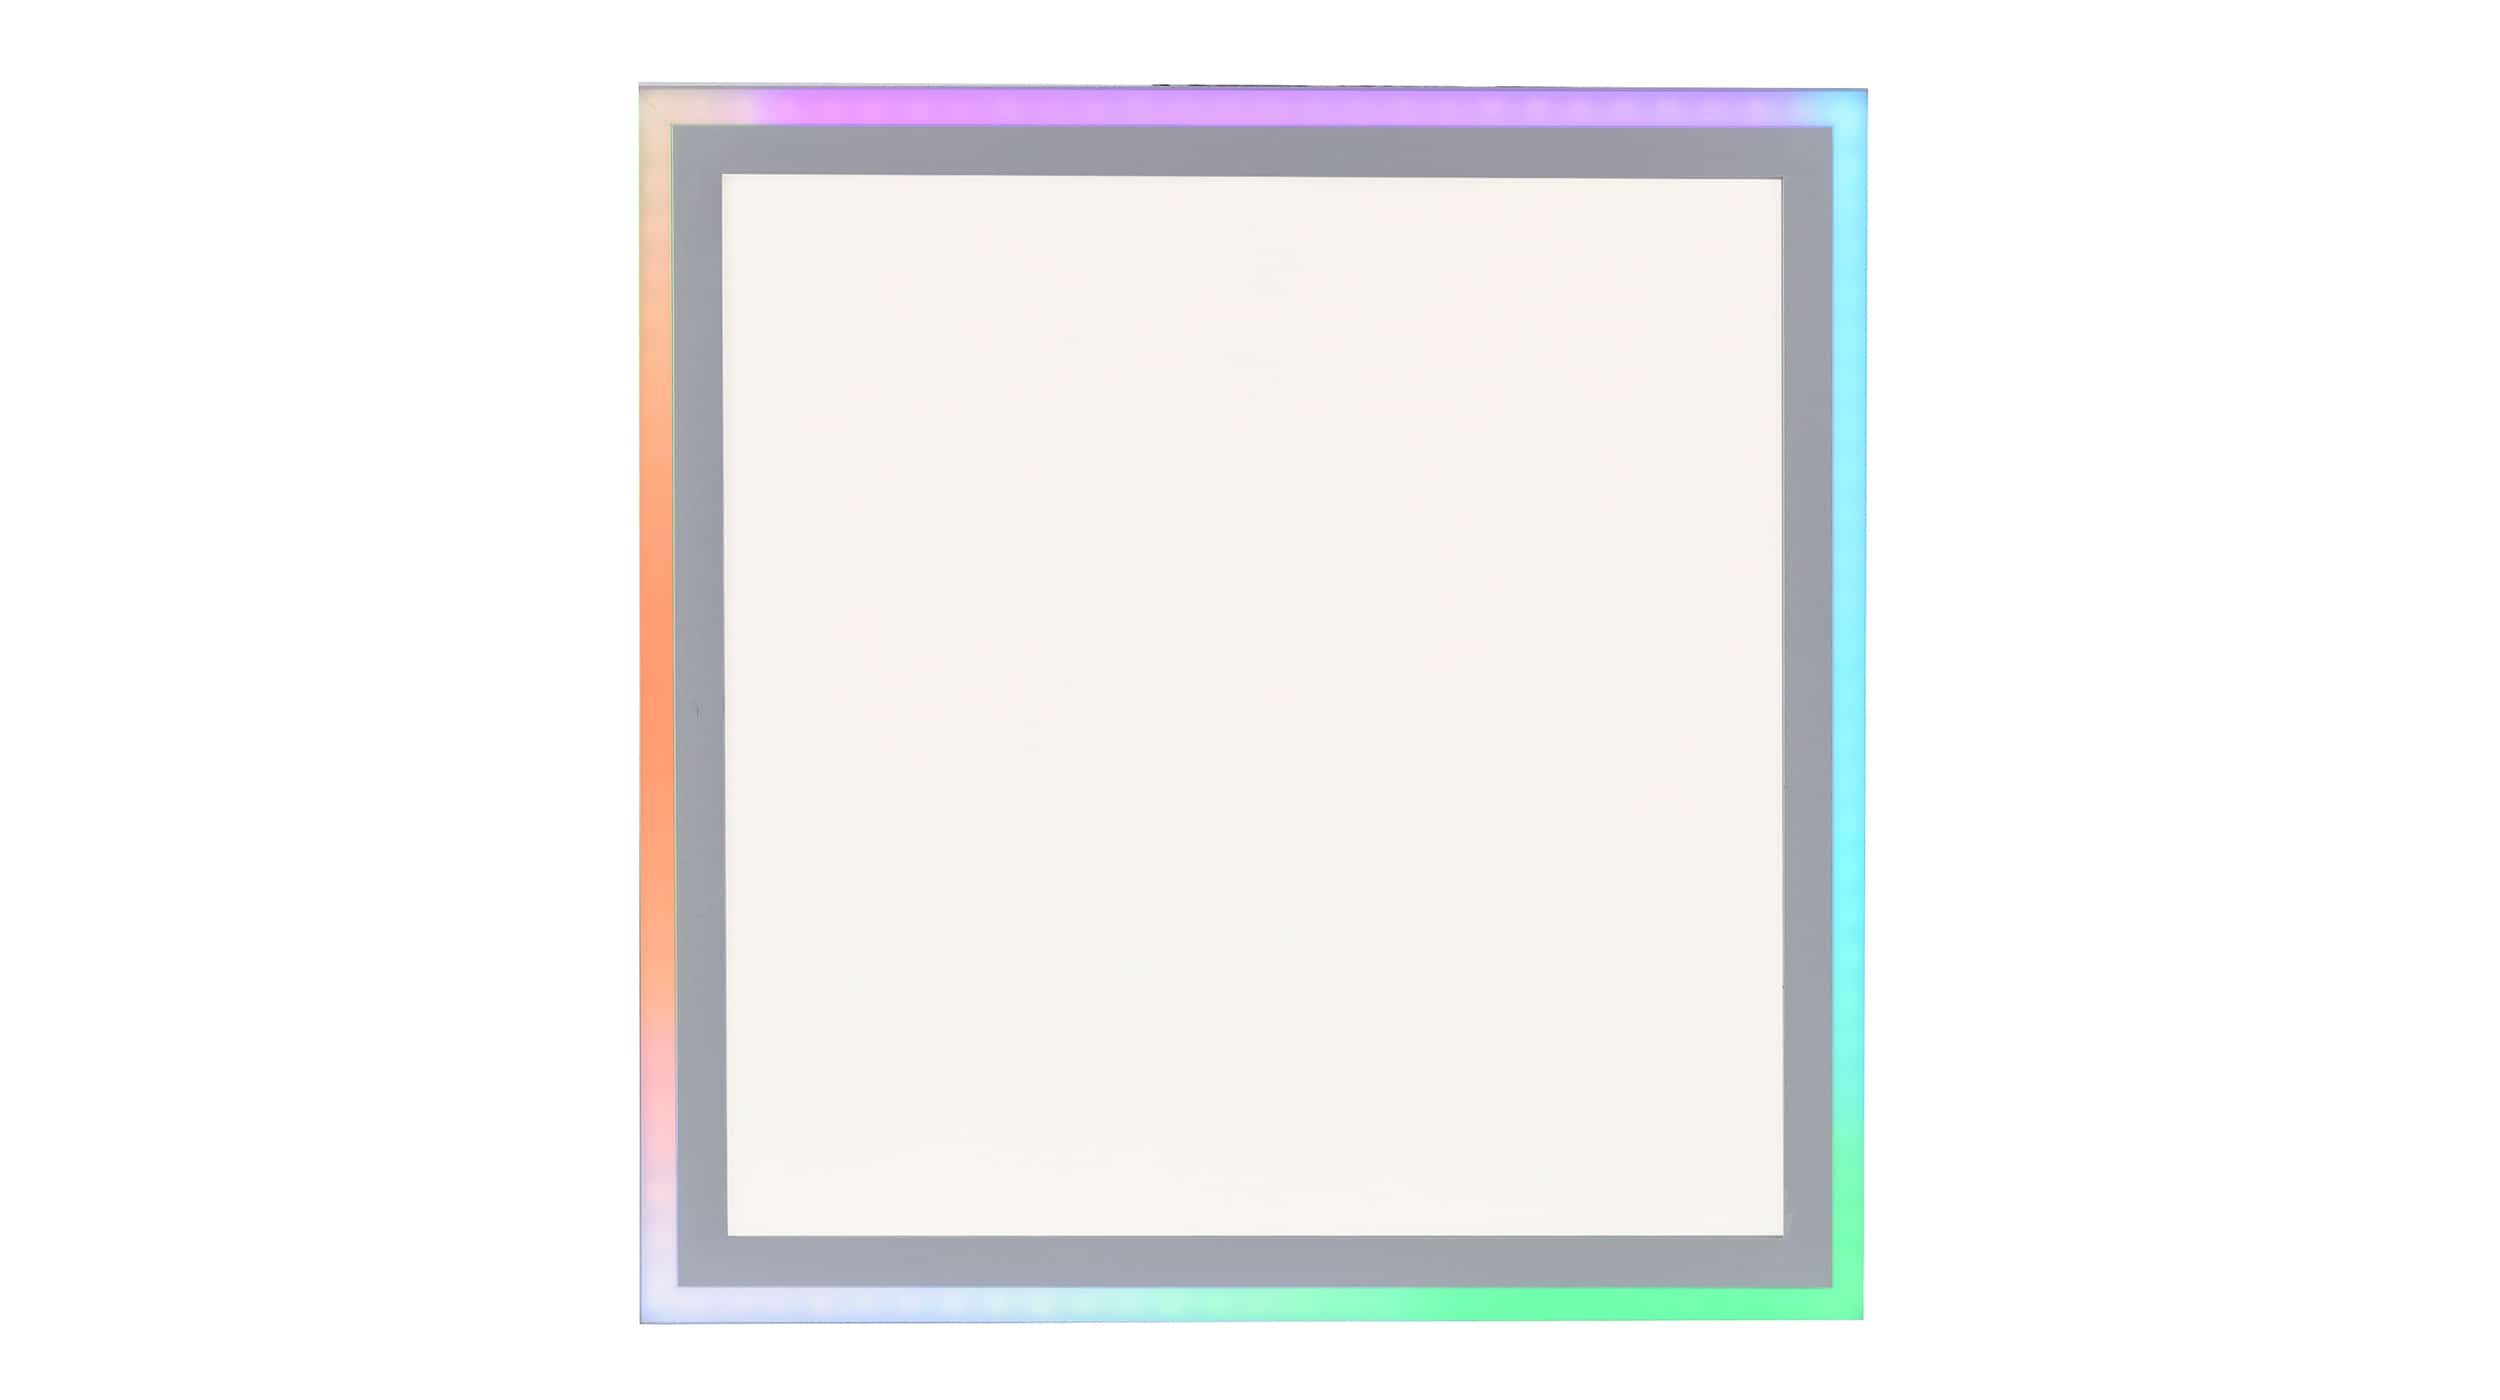 Deckenleuchte LED weiß 40 cm mit RGB-Farbwechsel - EDGING